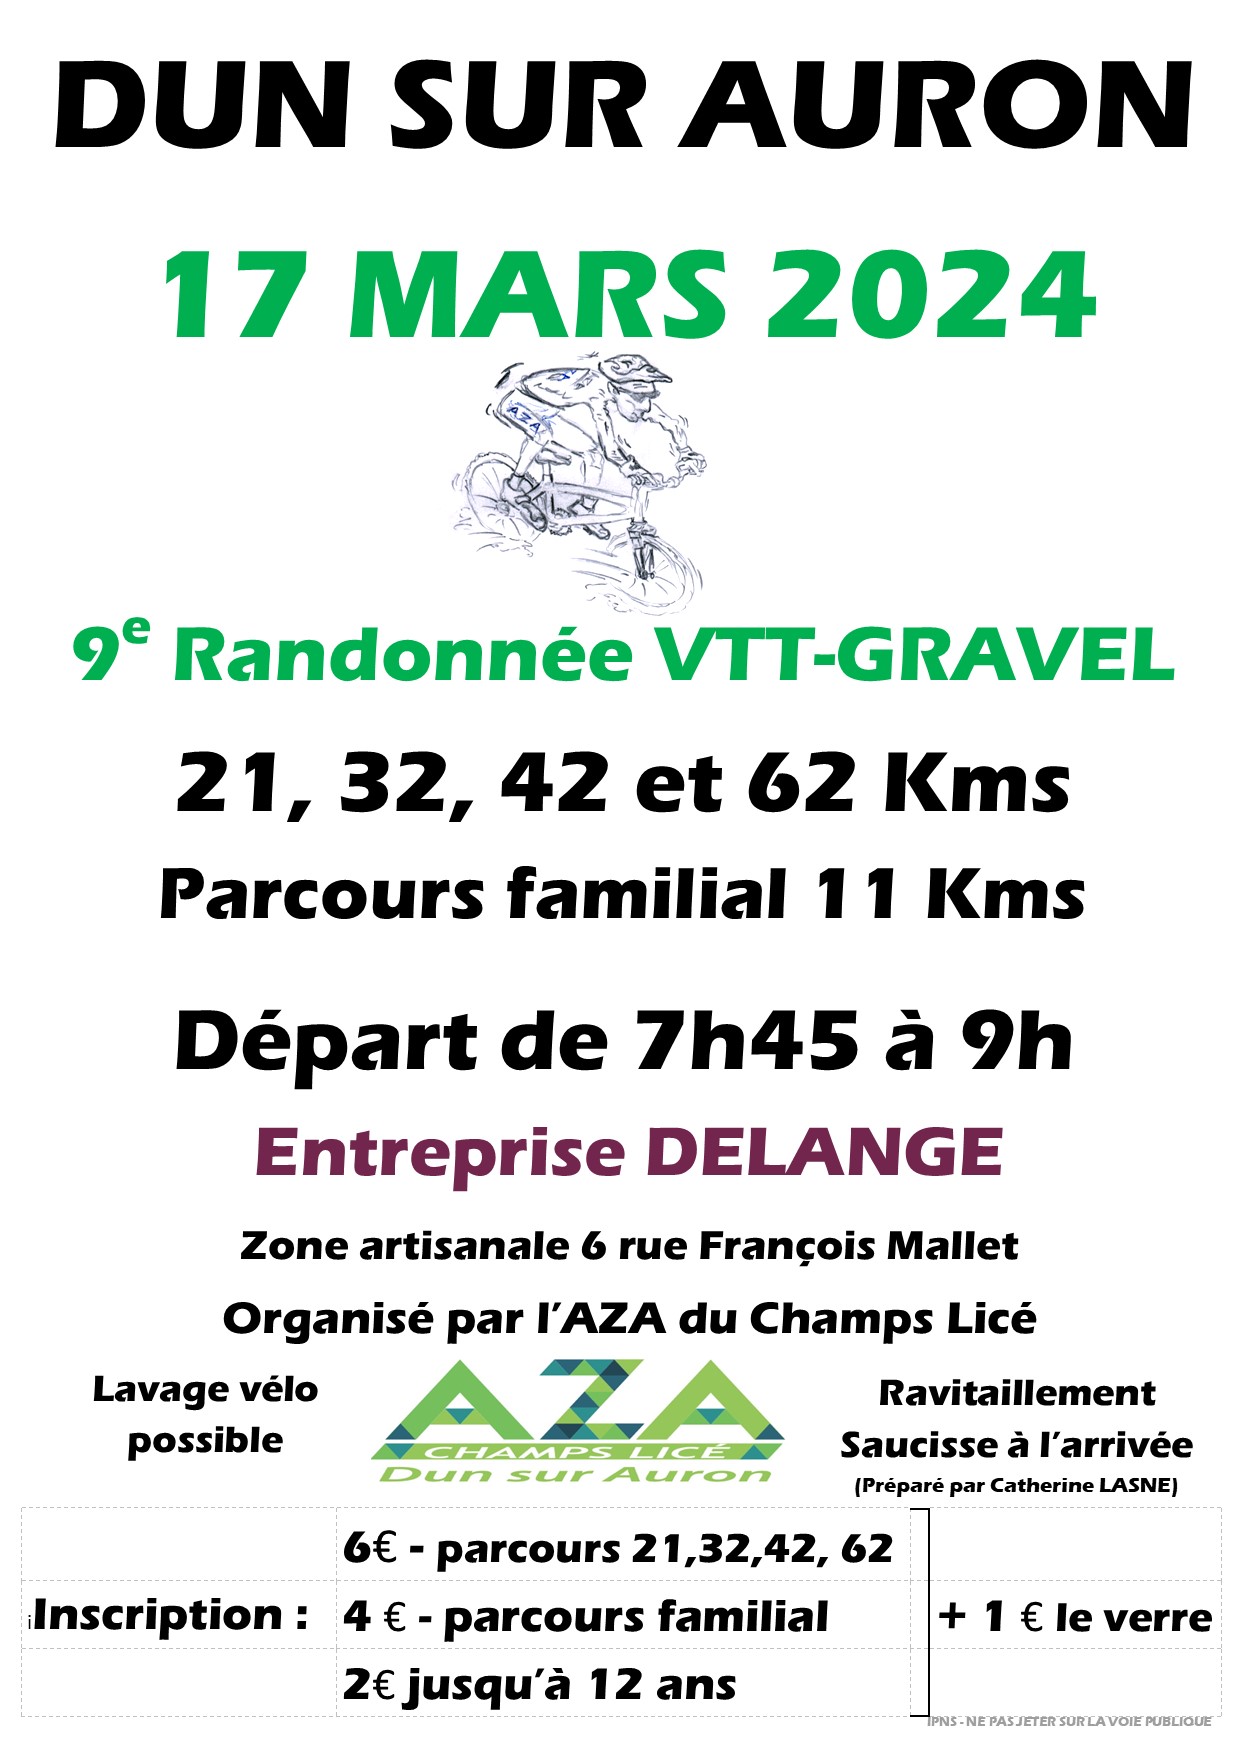 Affiche de La 9ème Randonnée VTT-GRAVEL de l'AZA du Champs lice à Dun-sur-Auron